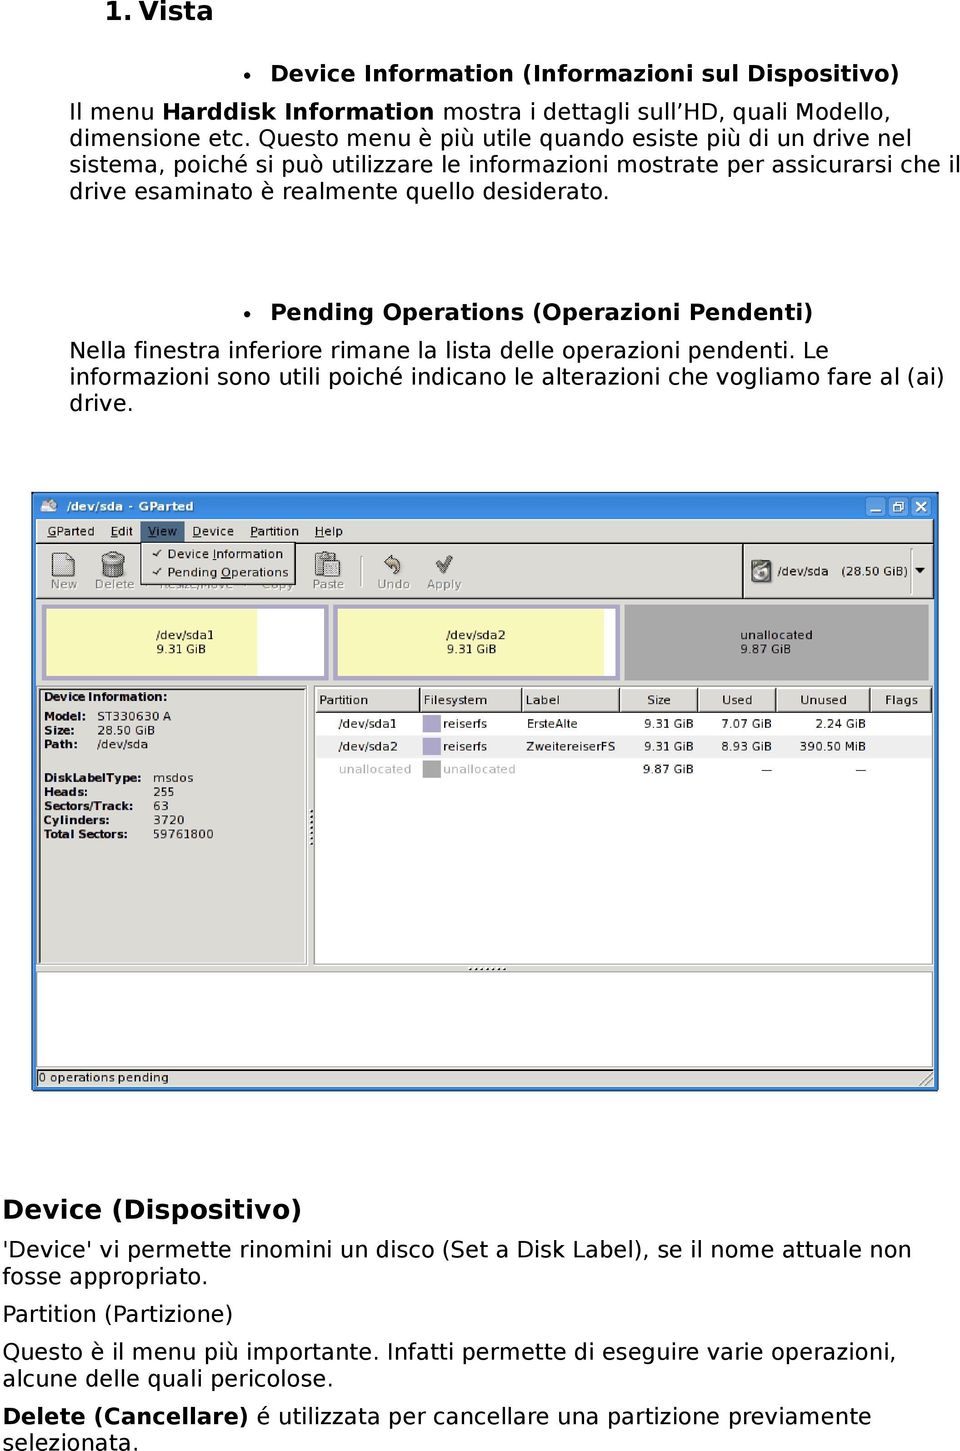 Pending Operations (Operazioni Pendenti) Nella finestra inferiore rimane la lista delle operazioni pendenti. Le informazioni sono utili poiché indicano le alterazioni che vogliamo fare al (ai) drive.